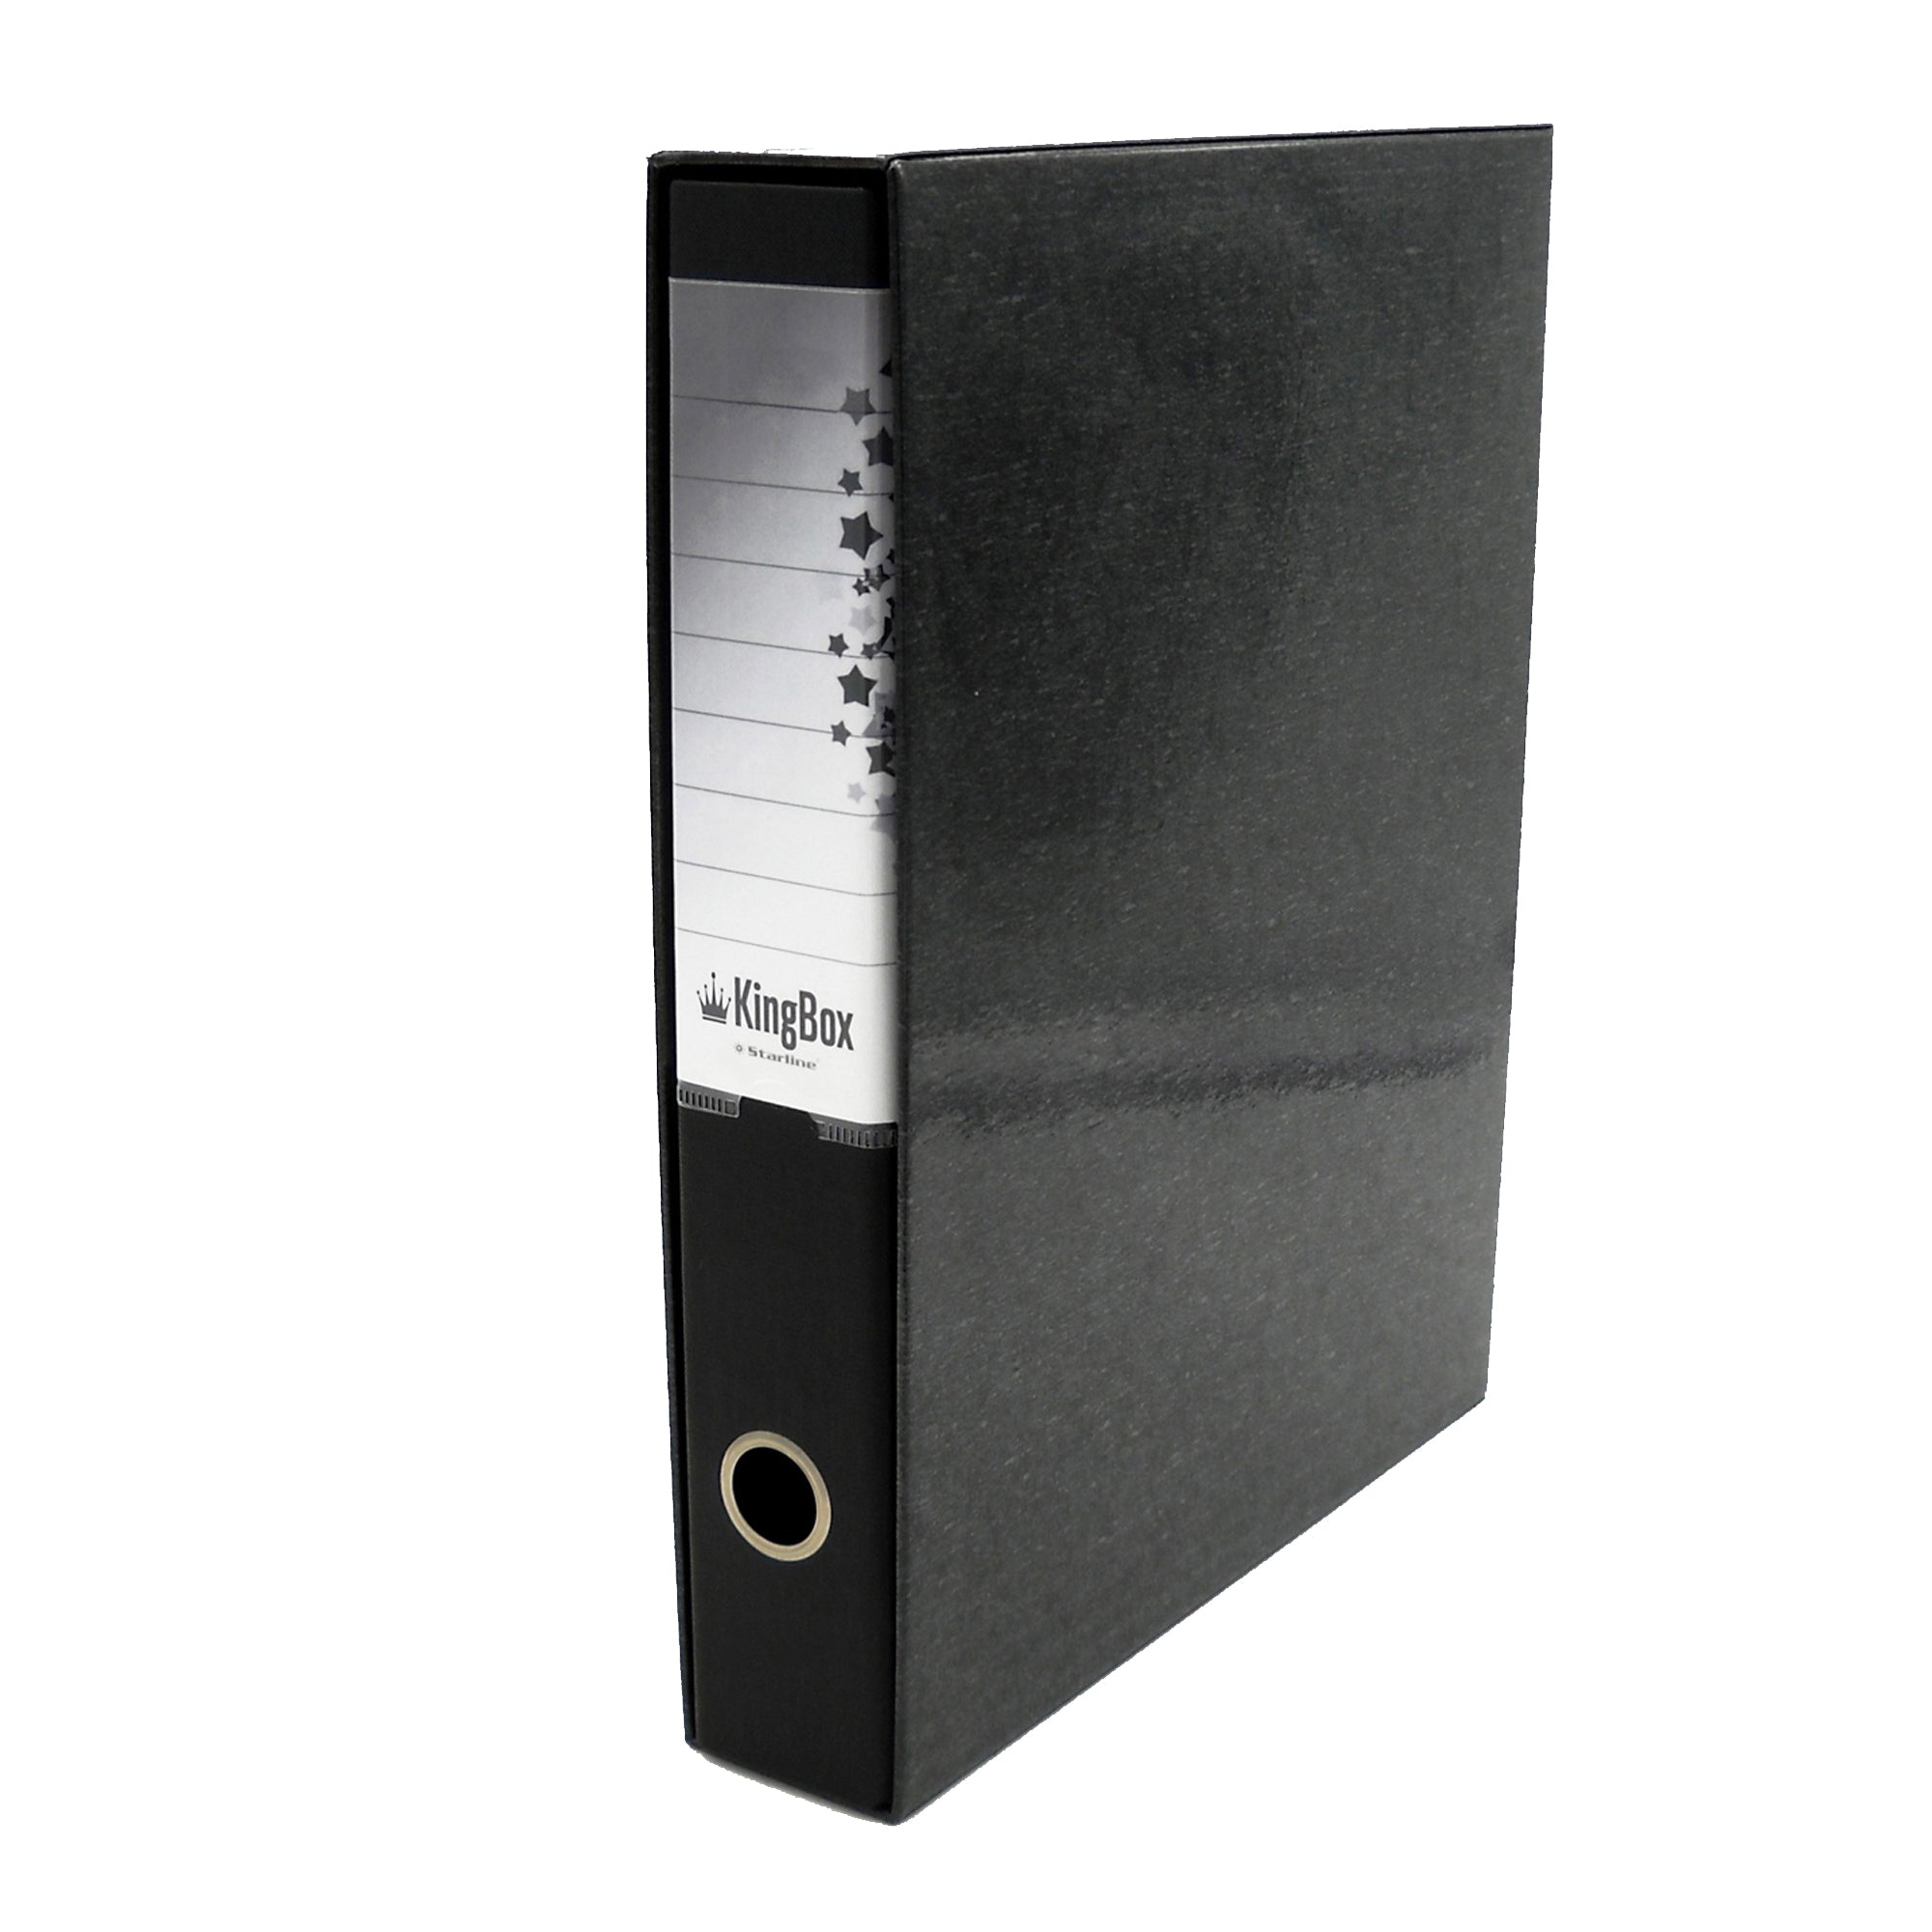 starline-registratore-kingbox-f-to-protocollo-dorso-5cm-nero